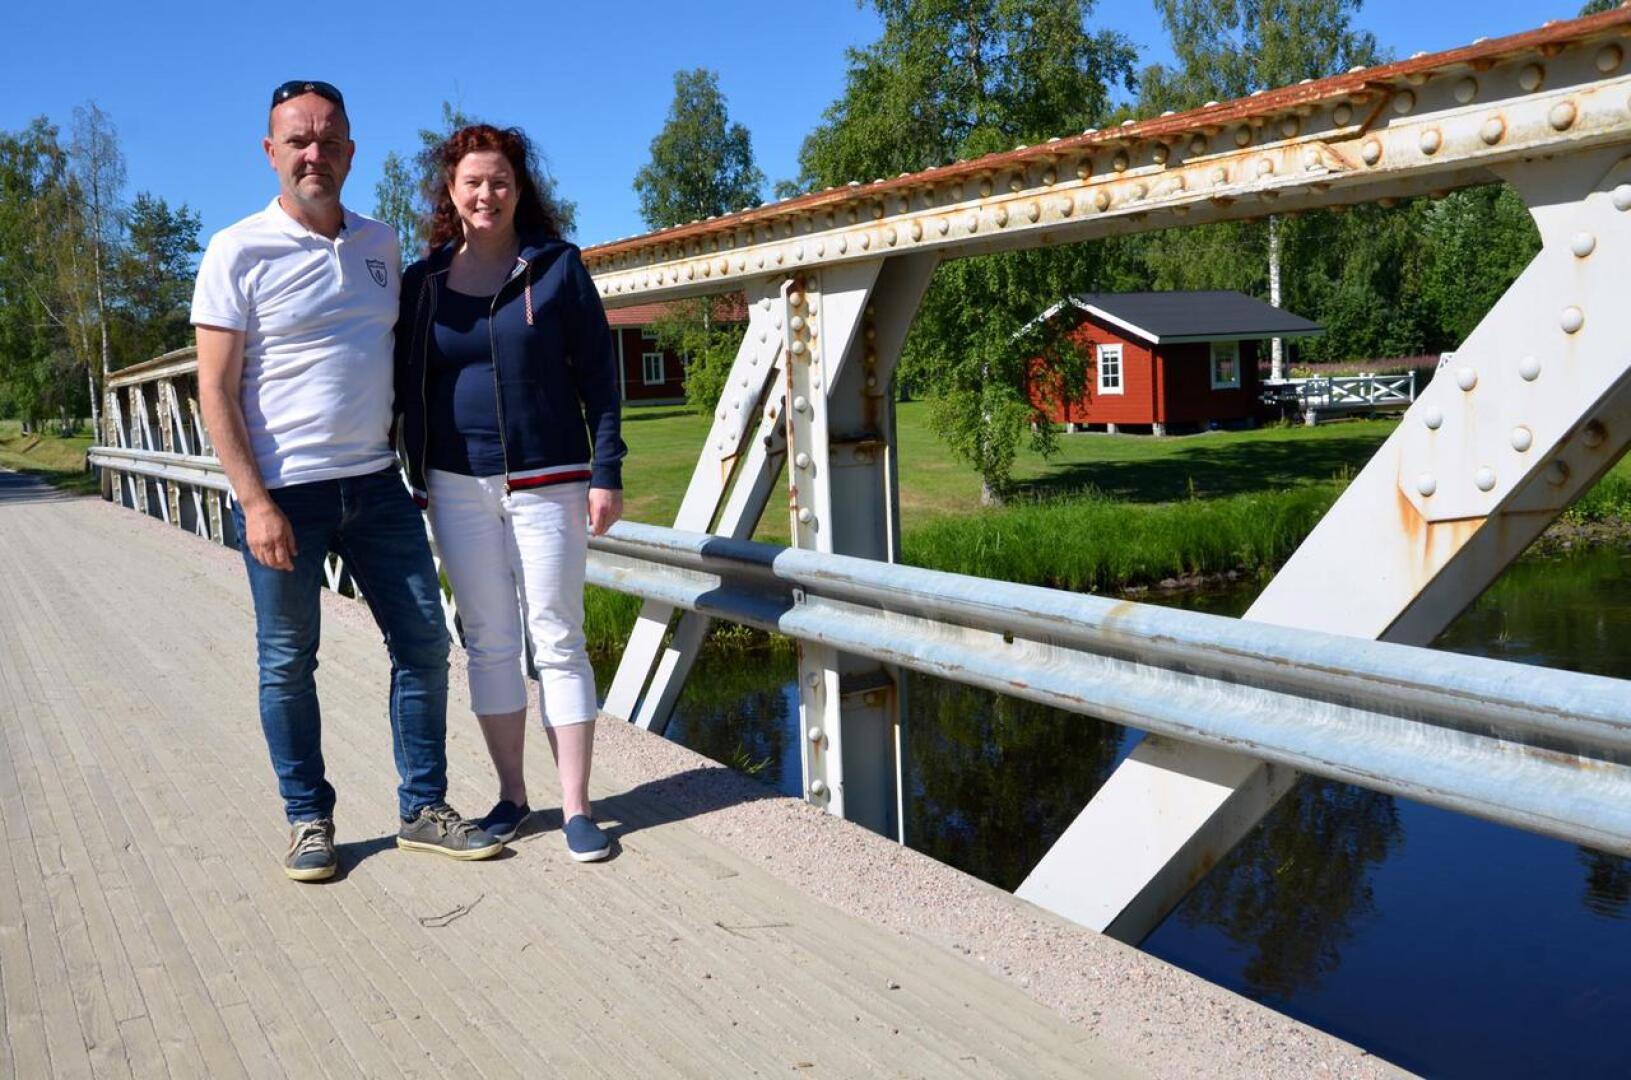 Mats Vidjeskog ja Susanne Witting-Vidjeskog järjestävät pohjalaistalonsa pihalla Allsång vid Forssas -tapahtuman, joka pidetään nyt viidettä kertaa peräkkäin. Esiintymislavana toimii saunan terassi.